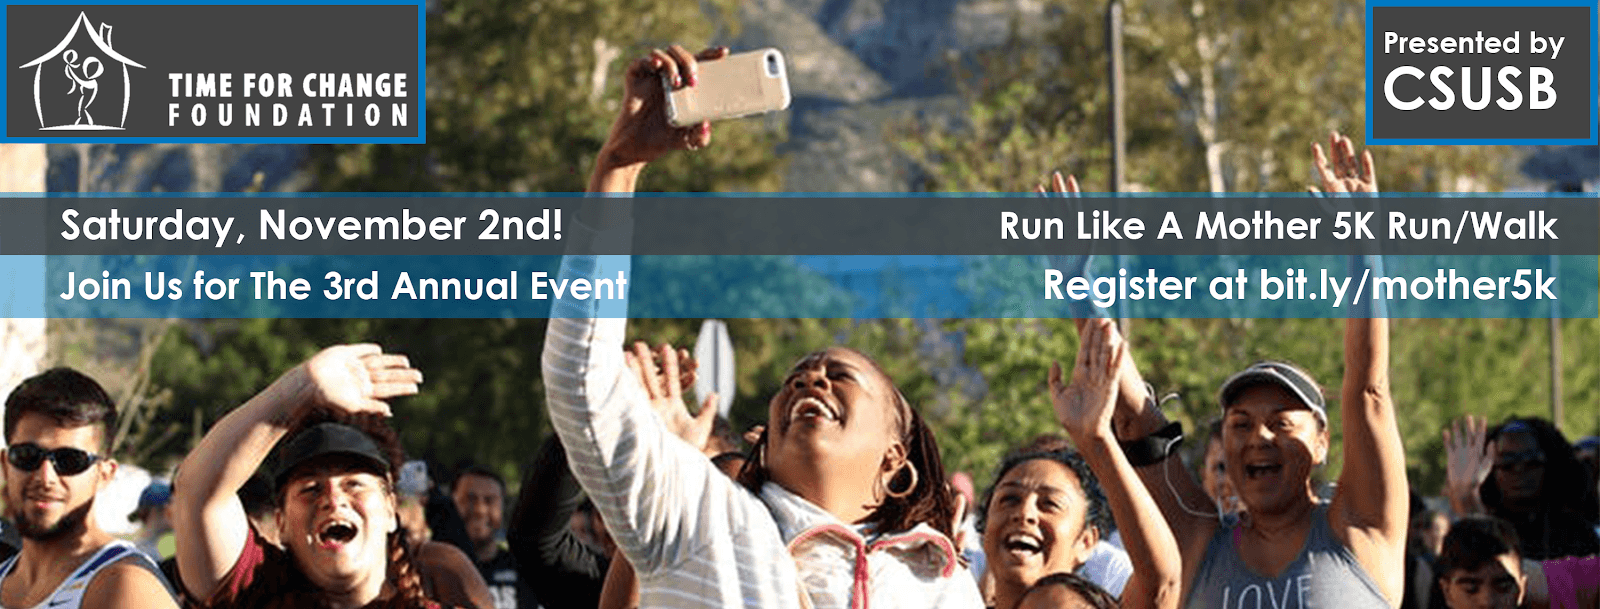 Announcing The Third Annual CSUSB Run Like A Mother 5K Run/Walk Time